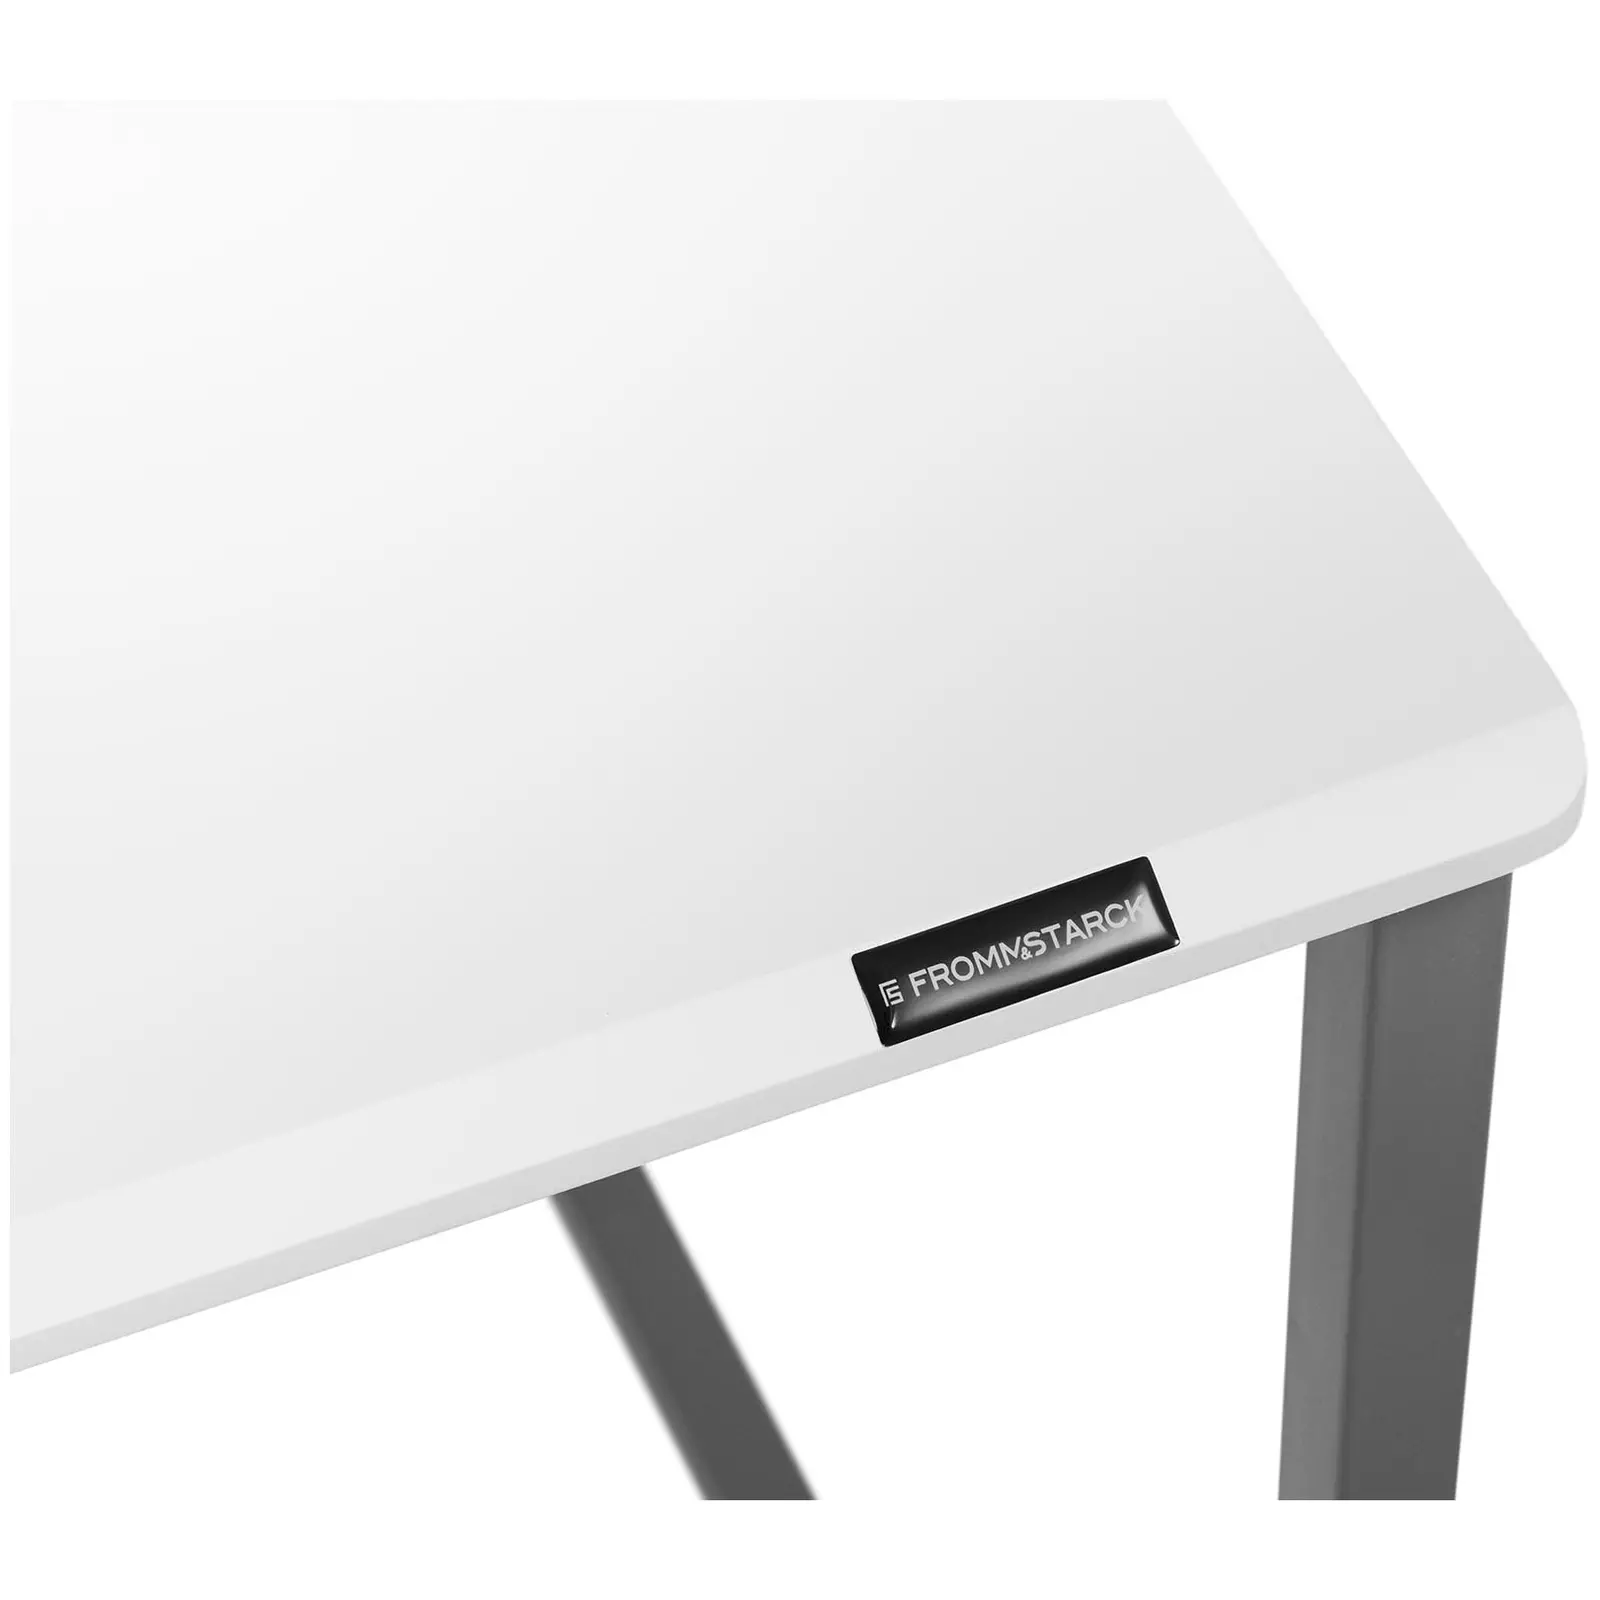 Kirjoituspöytä - 120 x 60 cm - valkoinen / harmaa